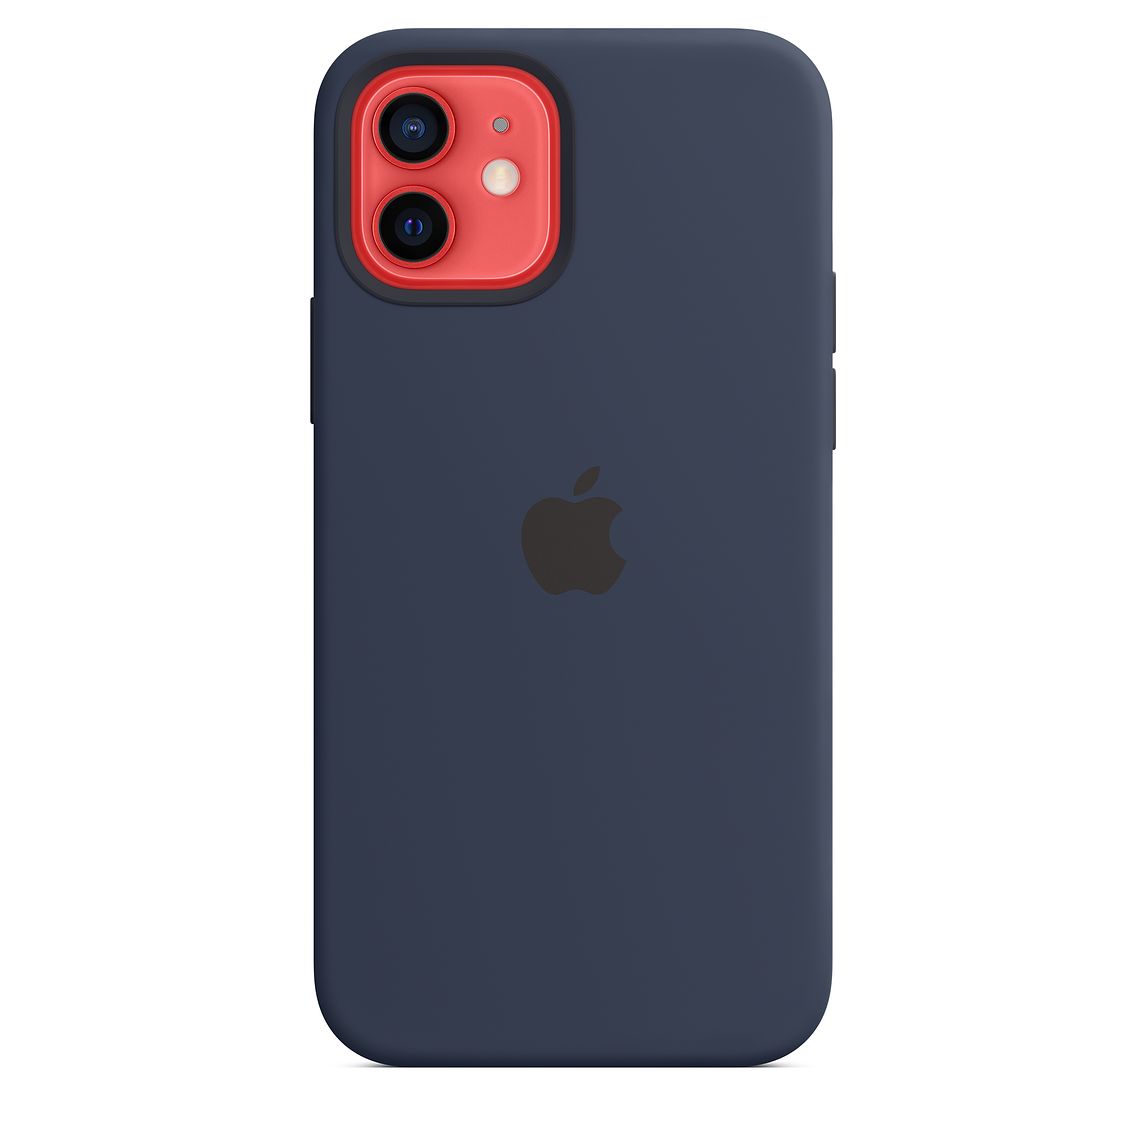 Чехол Apple MagSafe для iPhone 12/12 Pro, cиликон, «тёмный ультрамарин»